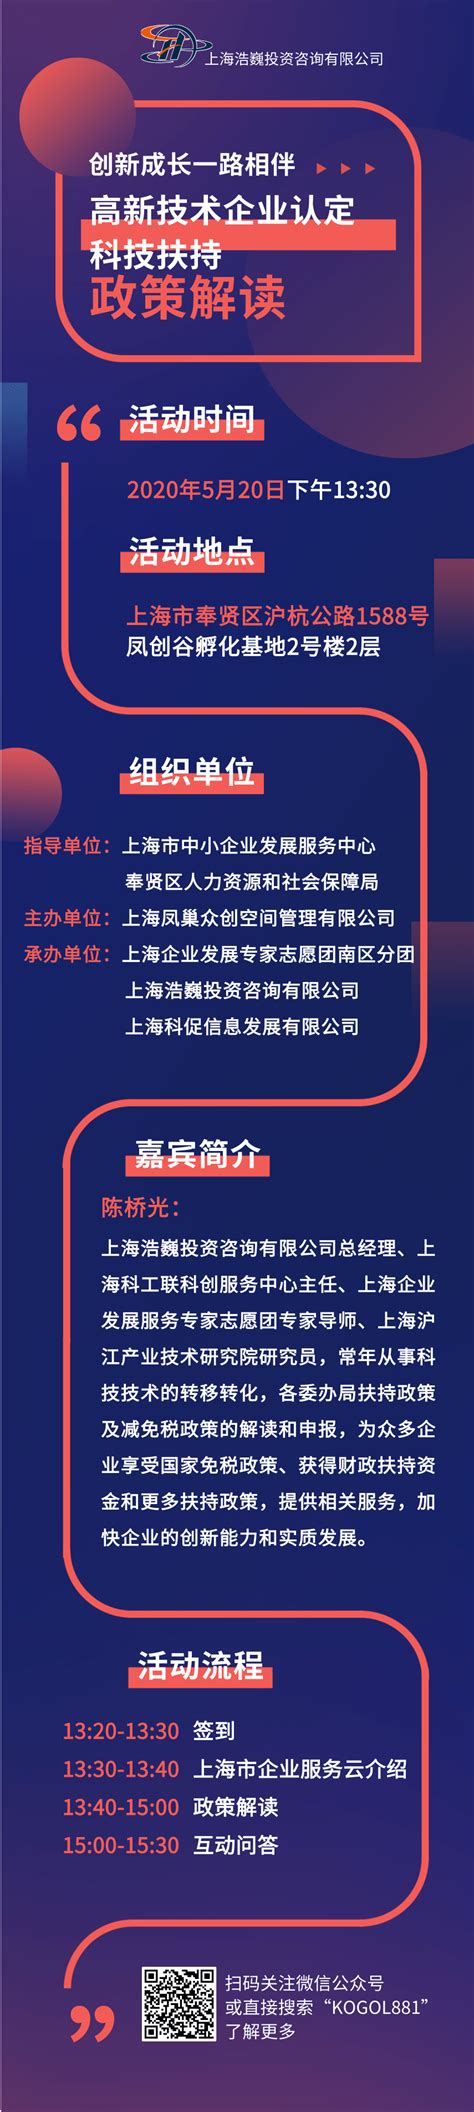 高新技术企业认定和科技扶持政策解读_上海市企业服务云